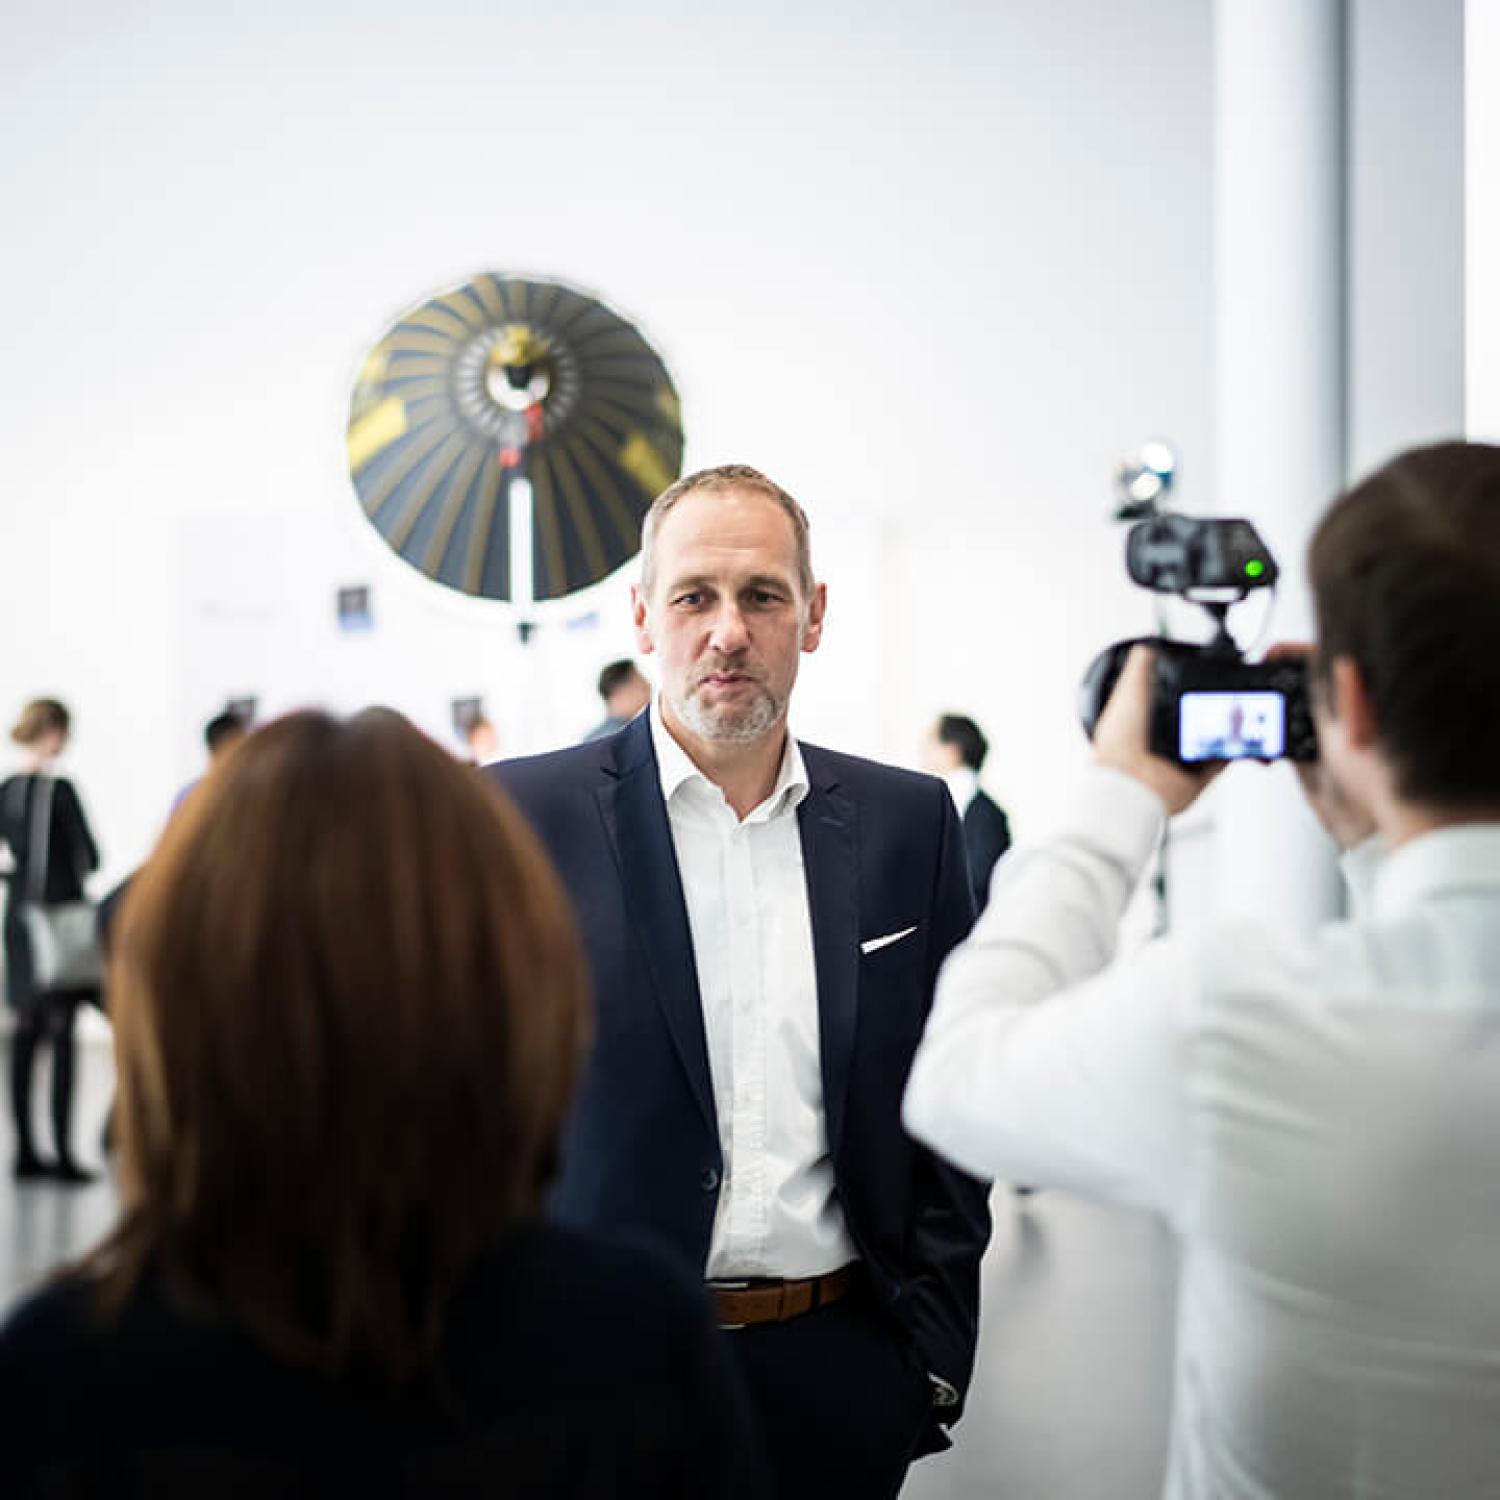 Reiner Gotschy, Vice President von BSH Hausgeräte, im Interview mit CSMM-Architekten während der Iconic-Awards-Verleihung in der Pinakothek der Moderne